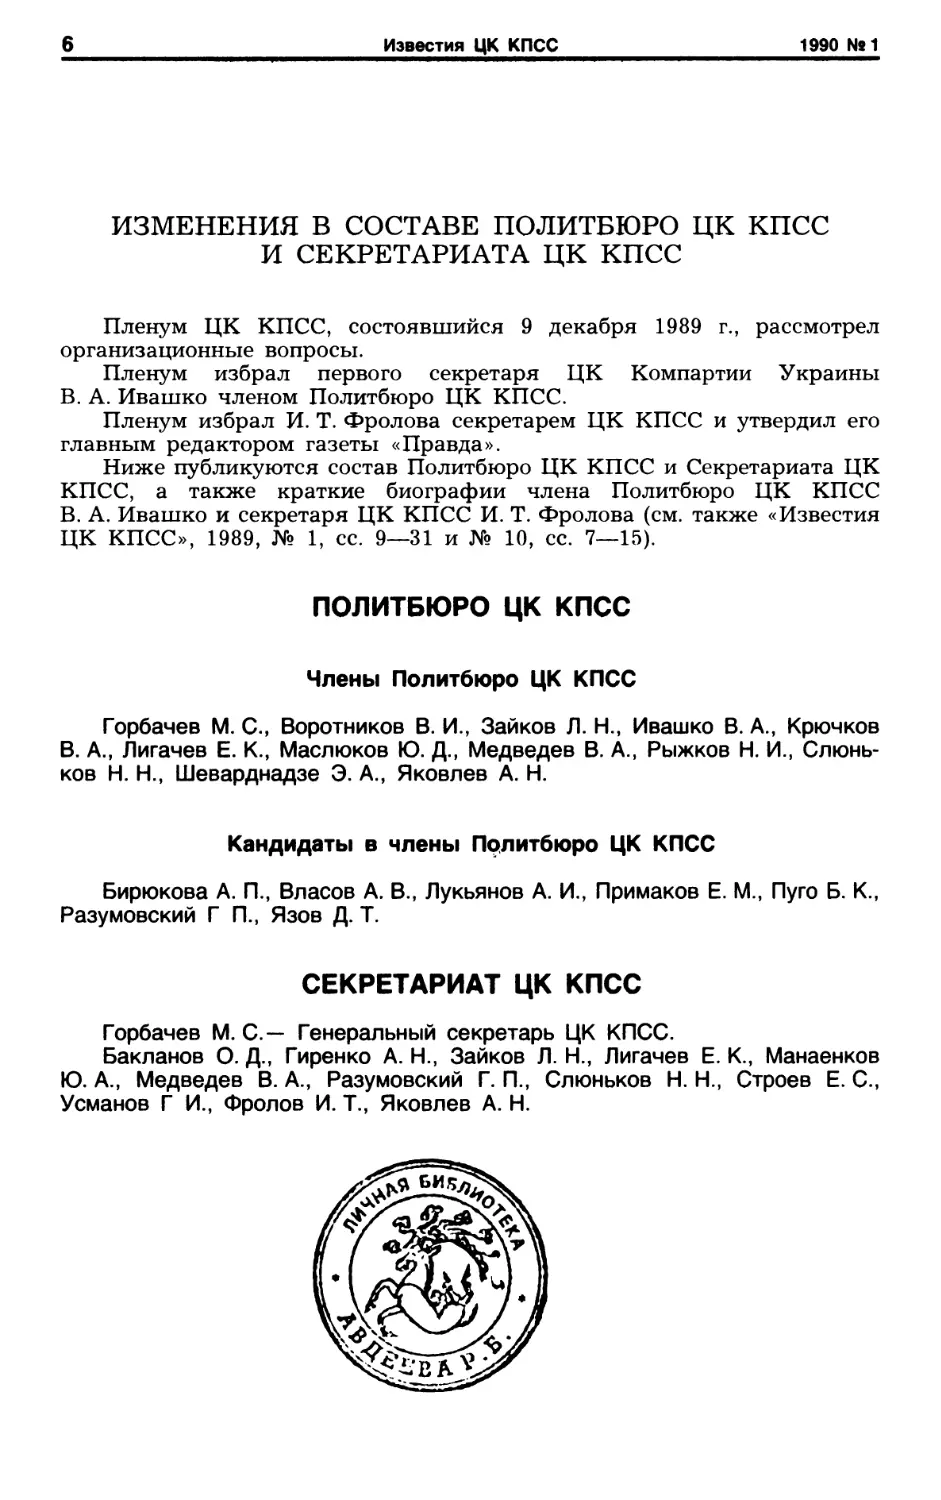 Изменения в составе Политбюро ЦК КПСС и Секретариата ЦК КПСС